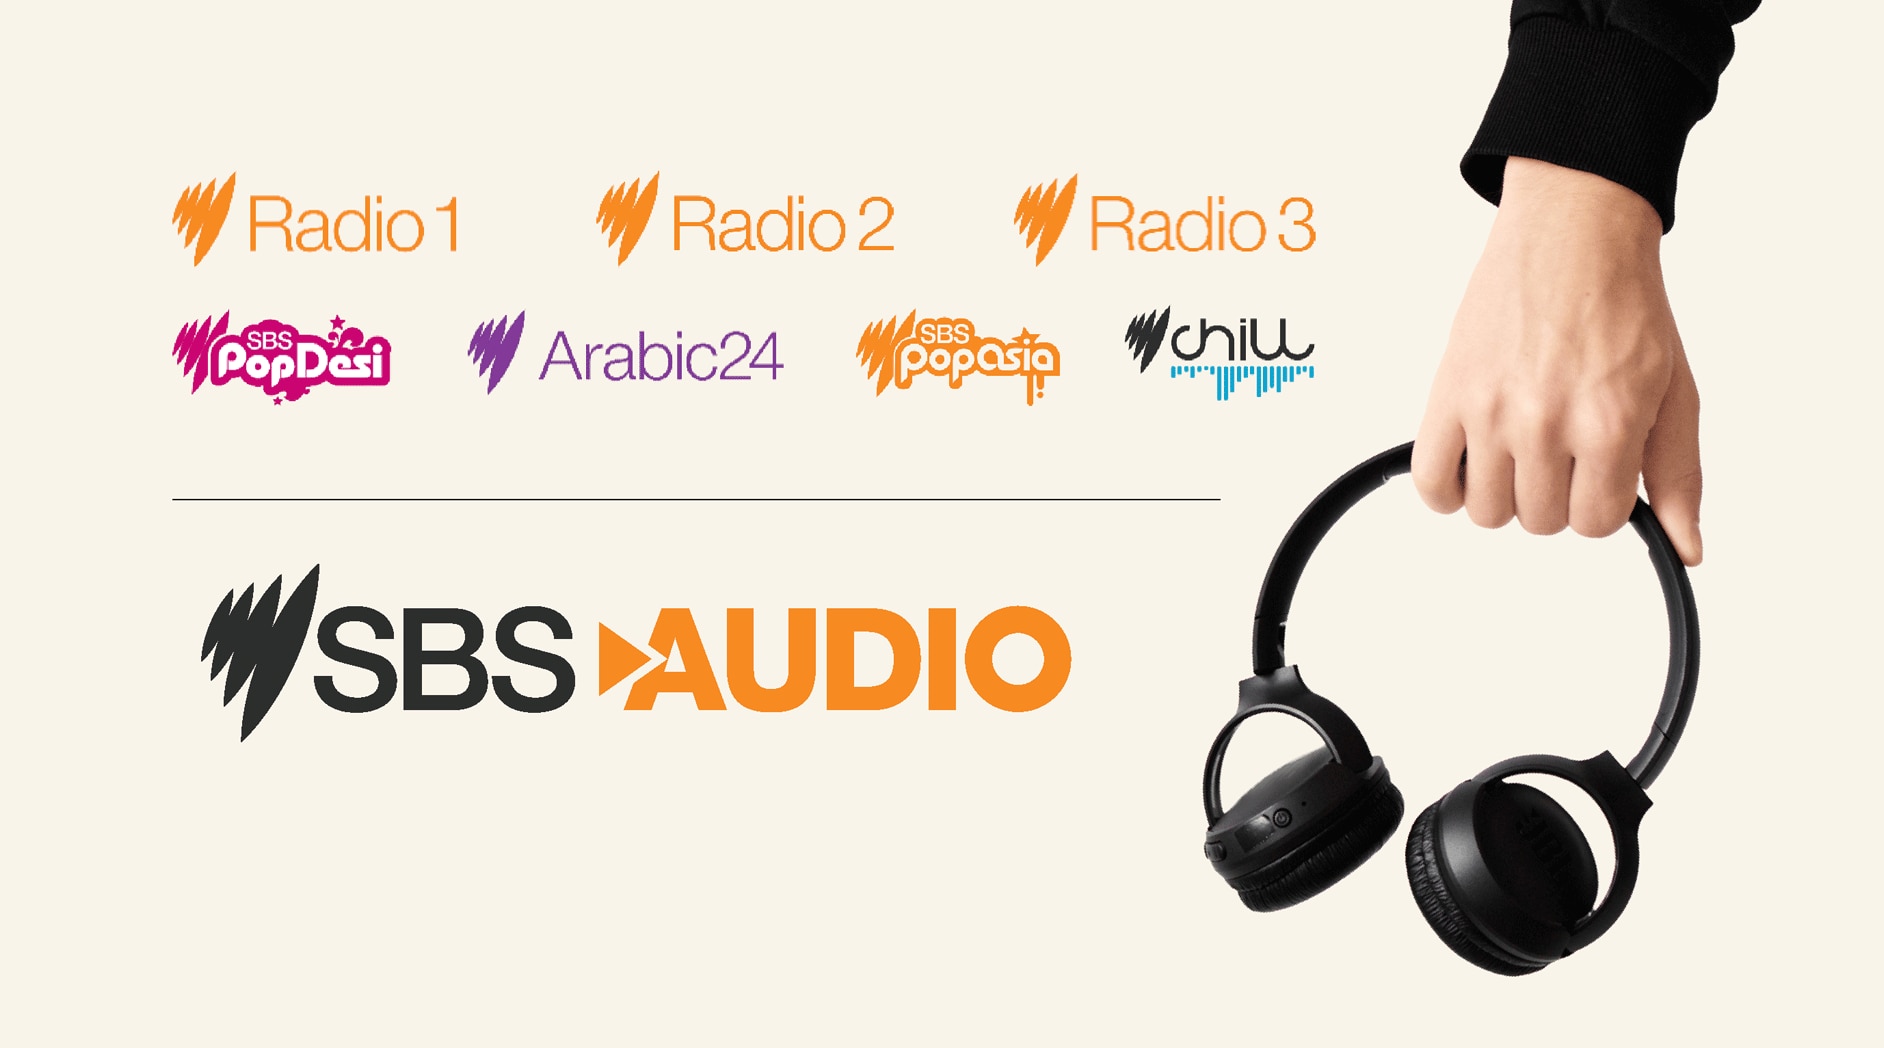 Logos of SBS Audio channels